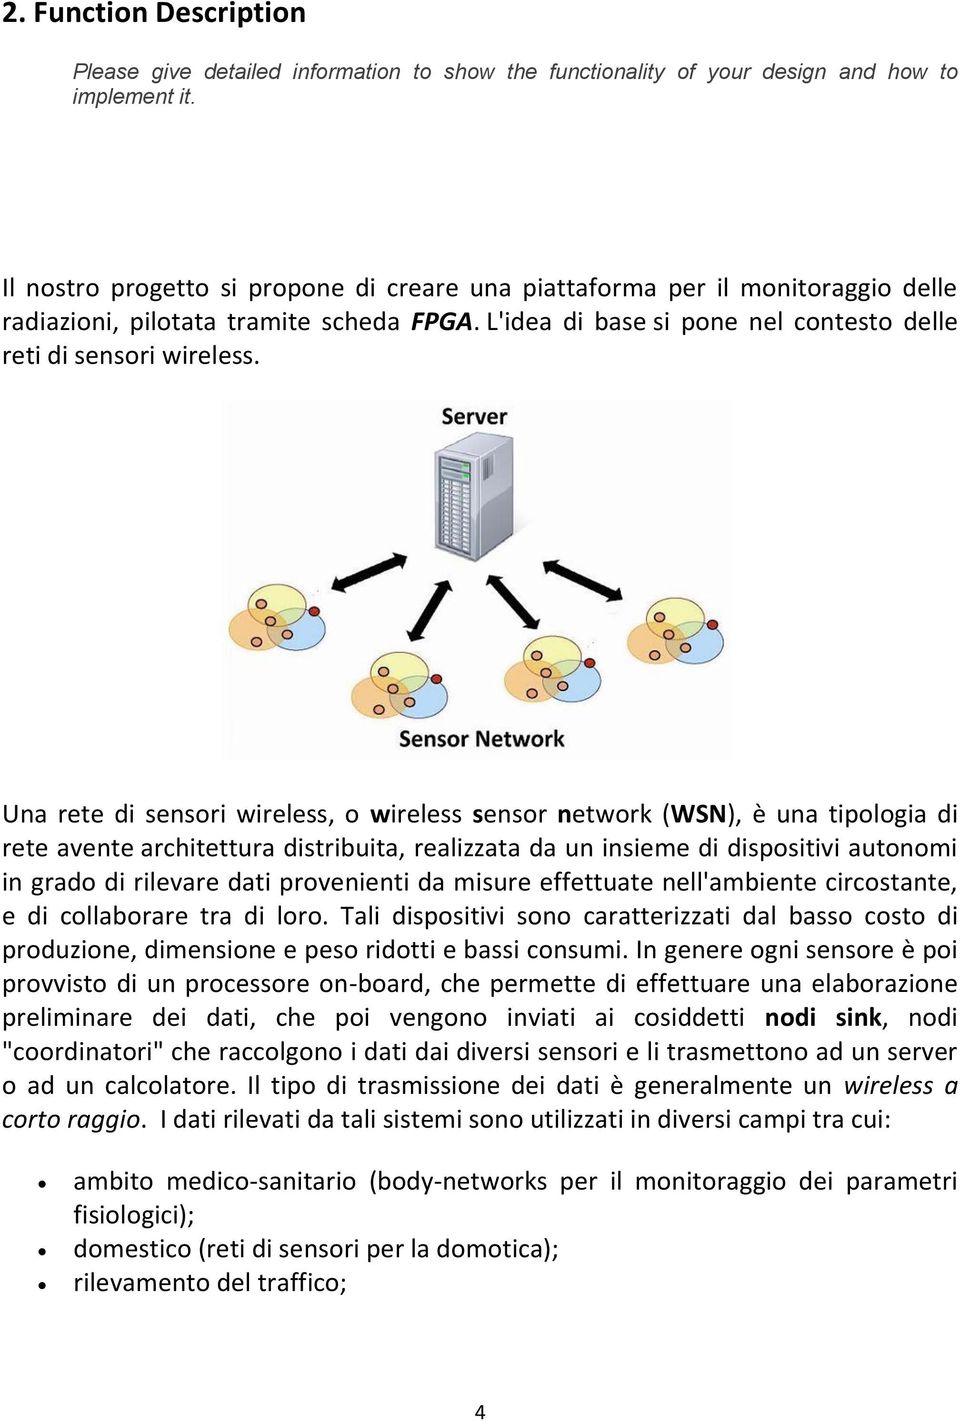 Una rete di sensori wireless, o wireless sensor network (WSN), è una tipologia di rete avente architettura distribuita, realizzata da un insieme di dispositivi autonomi in grado di rilevare dati